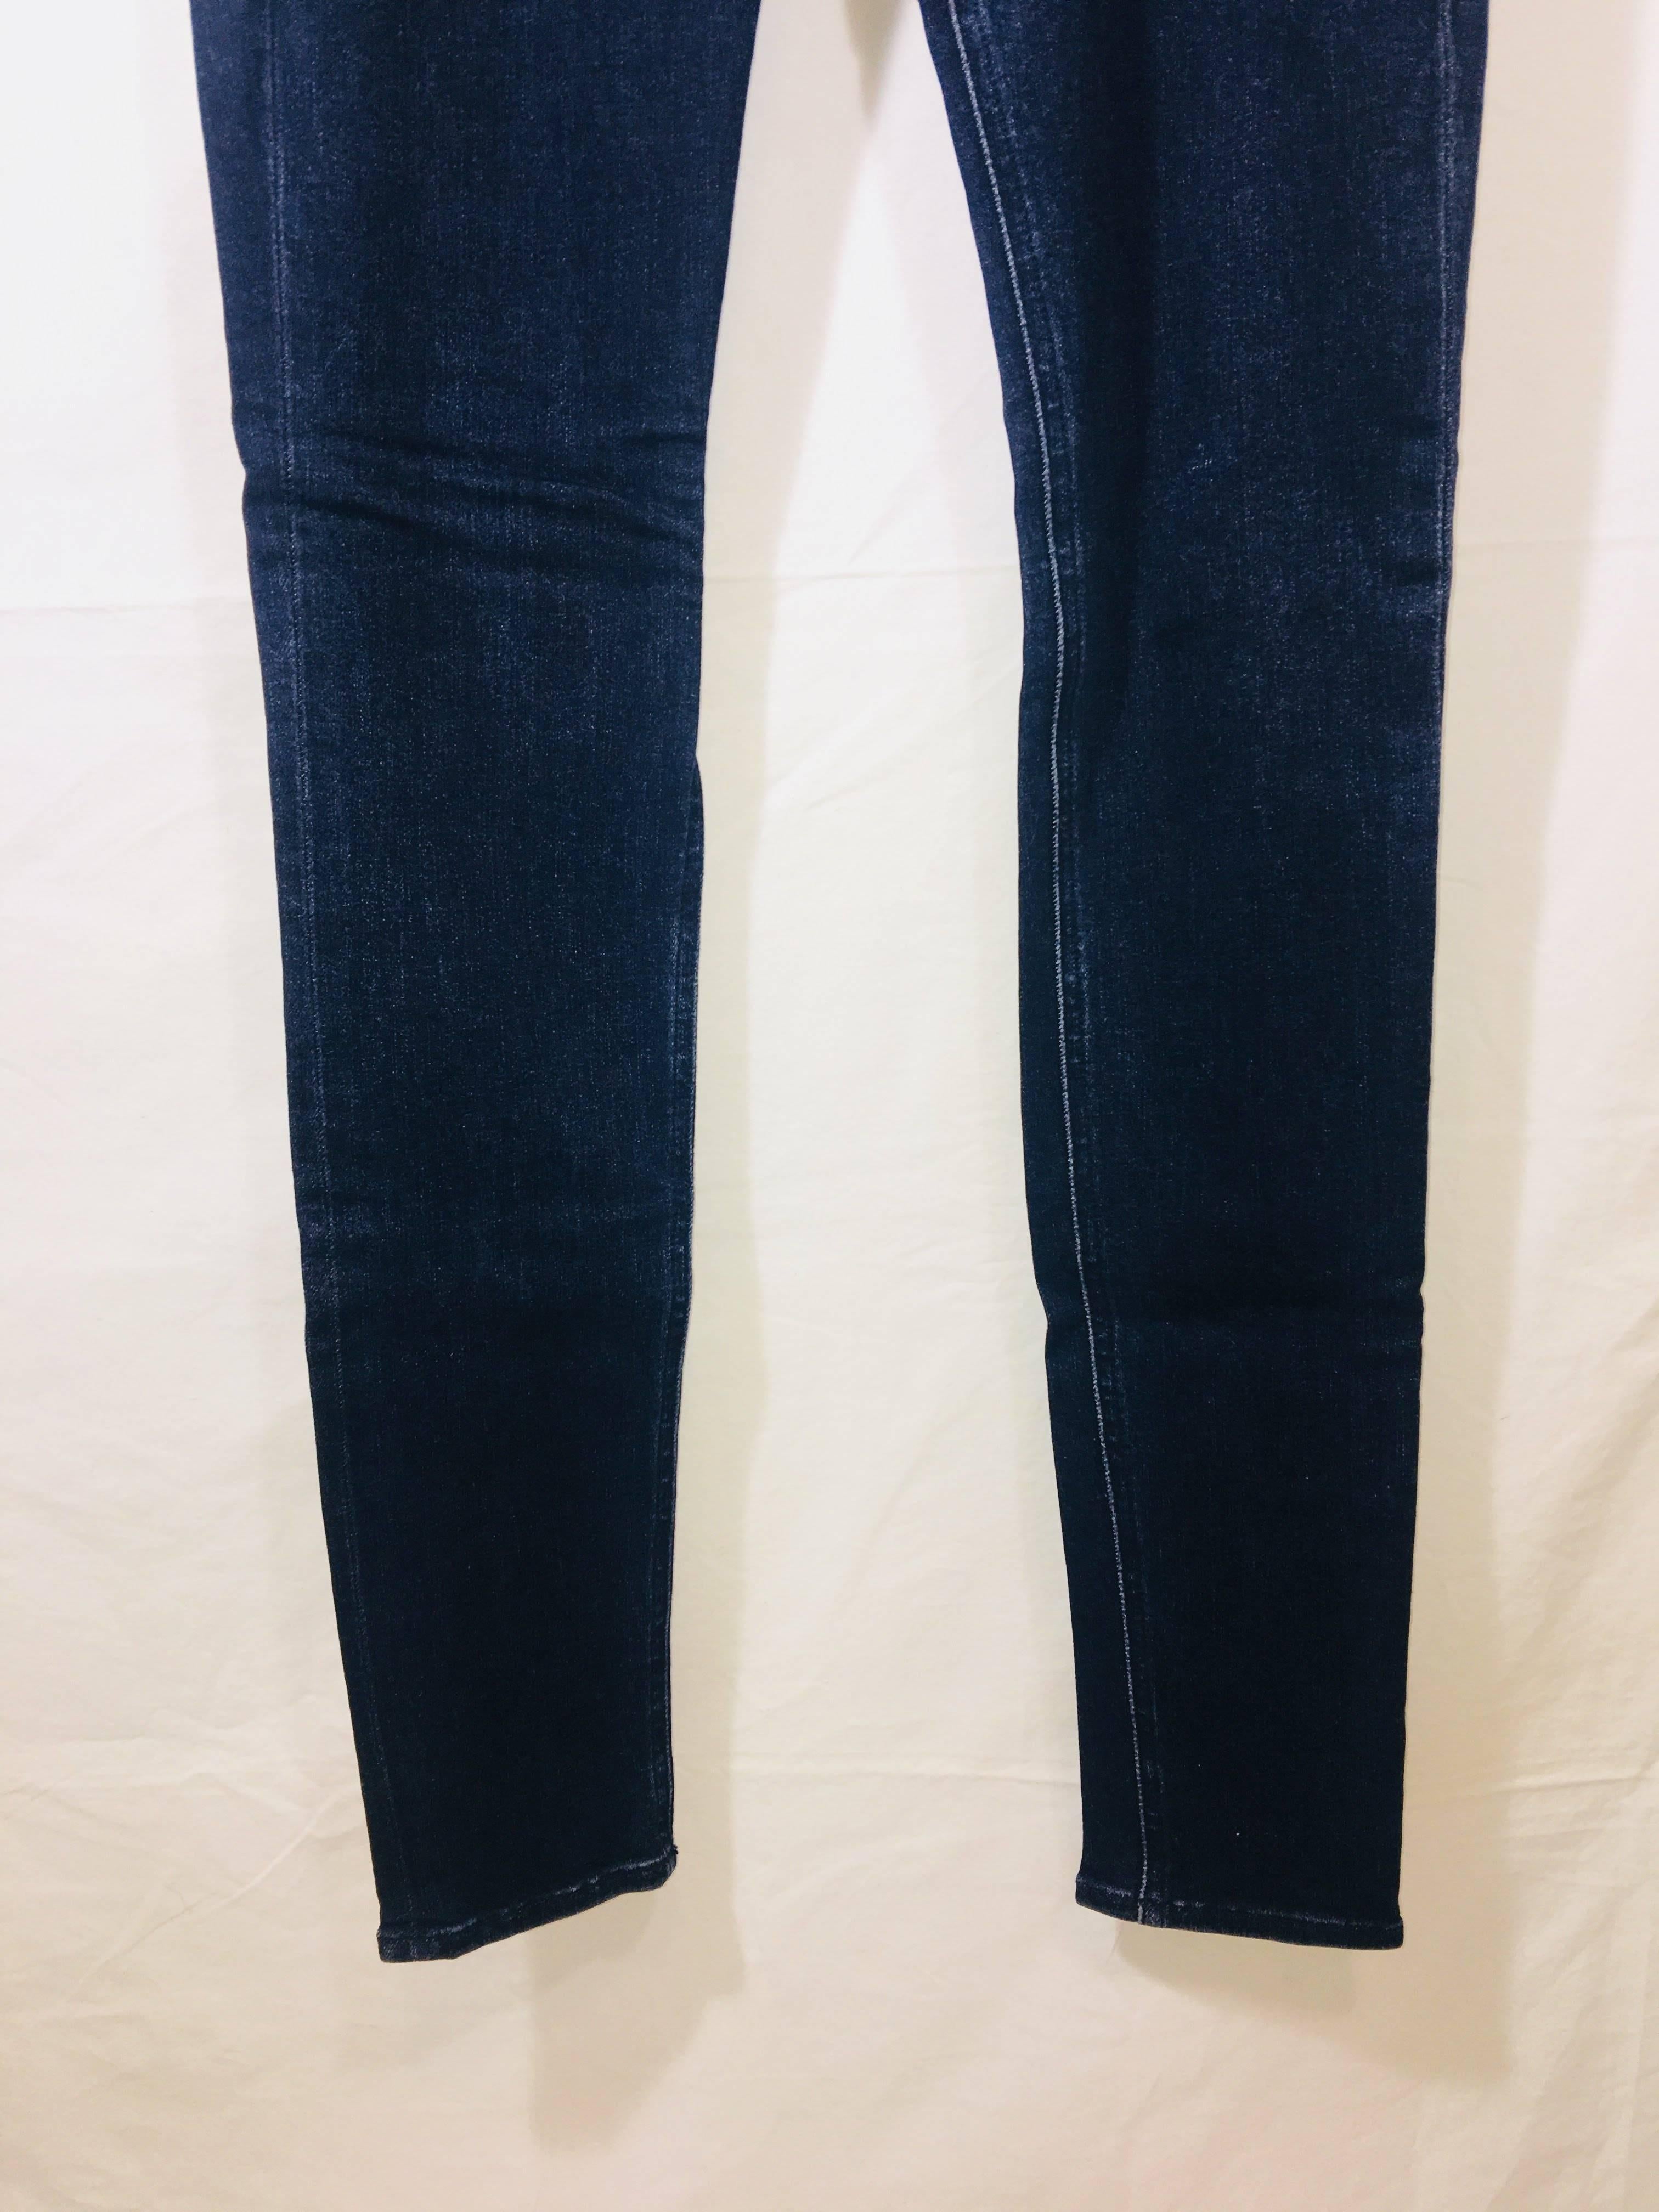 Rag & Bone Skinny Legging Jeans in Dark Wash Cotton.